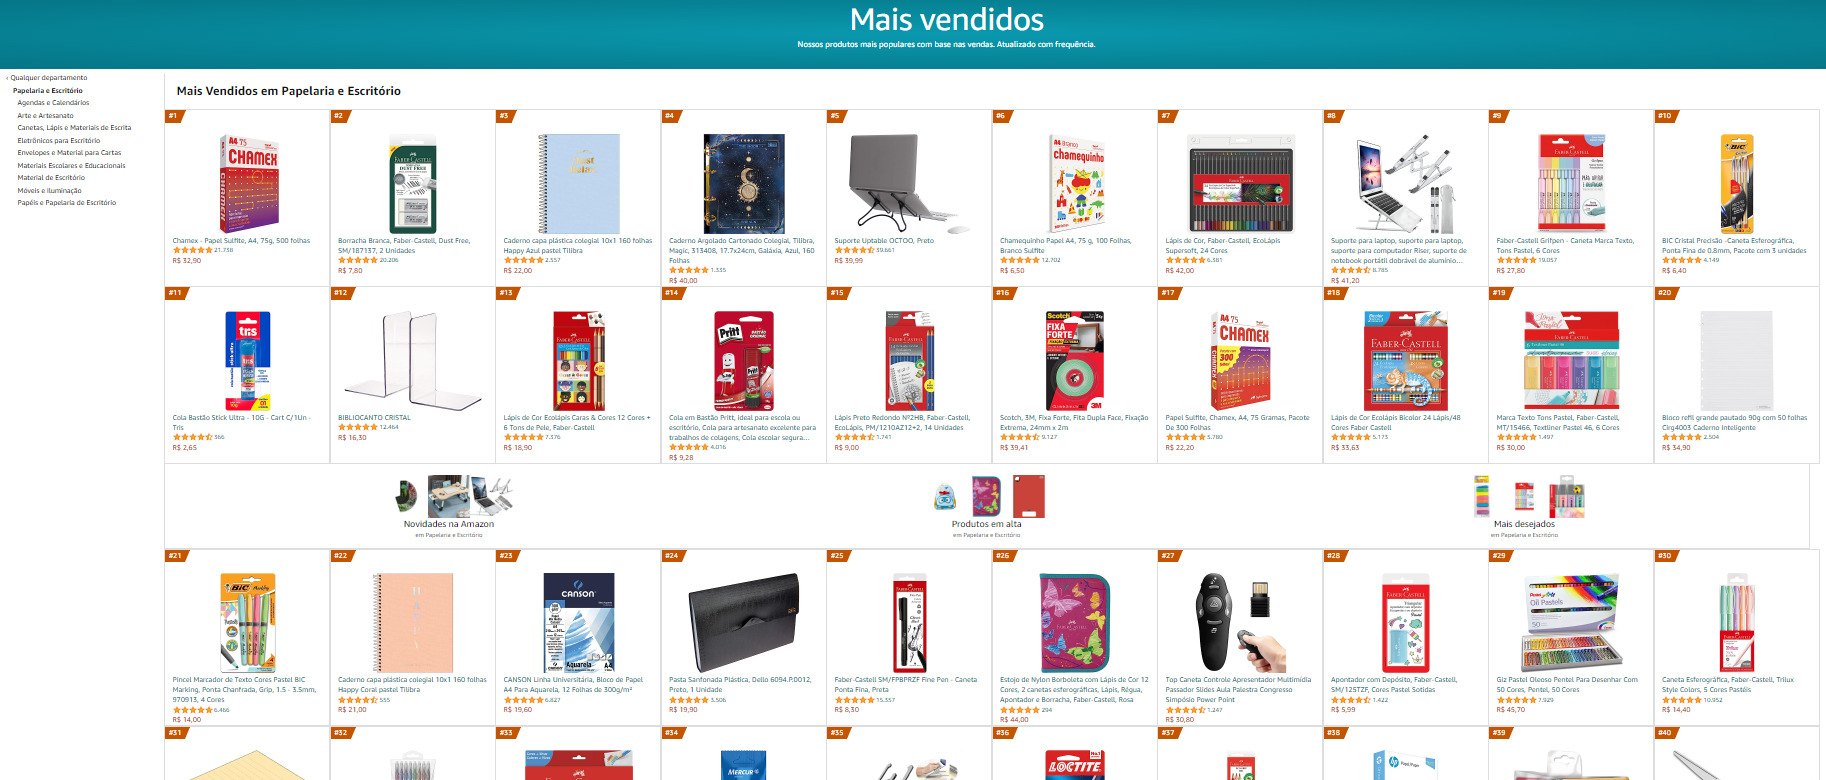 PrintScreen do Site “Amazon” apresentando produtos mais vendidos em papelaria e escritório.